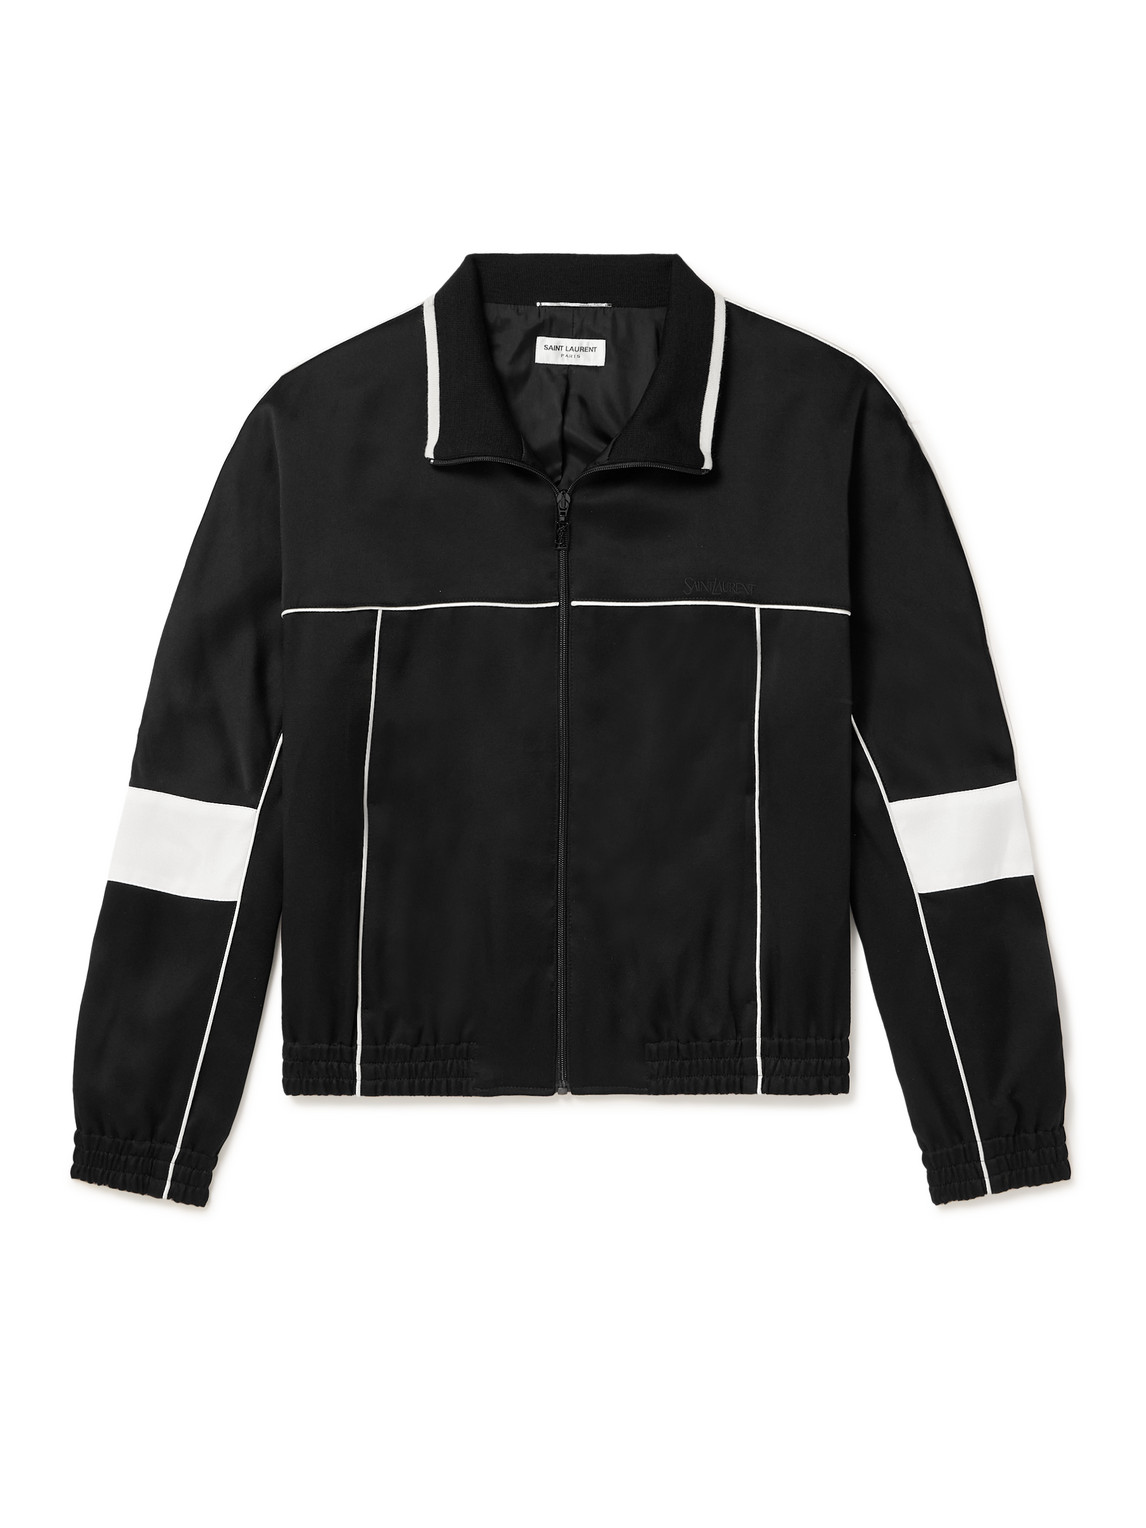 Saint Laurent Men's Teddy Jacket In Satin Crepe In Black